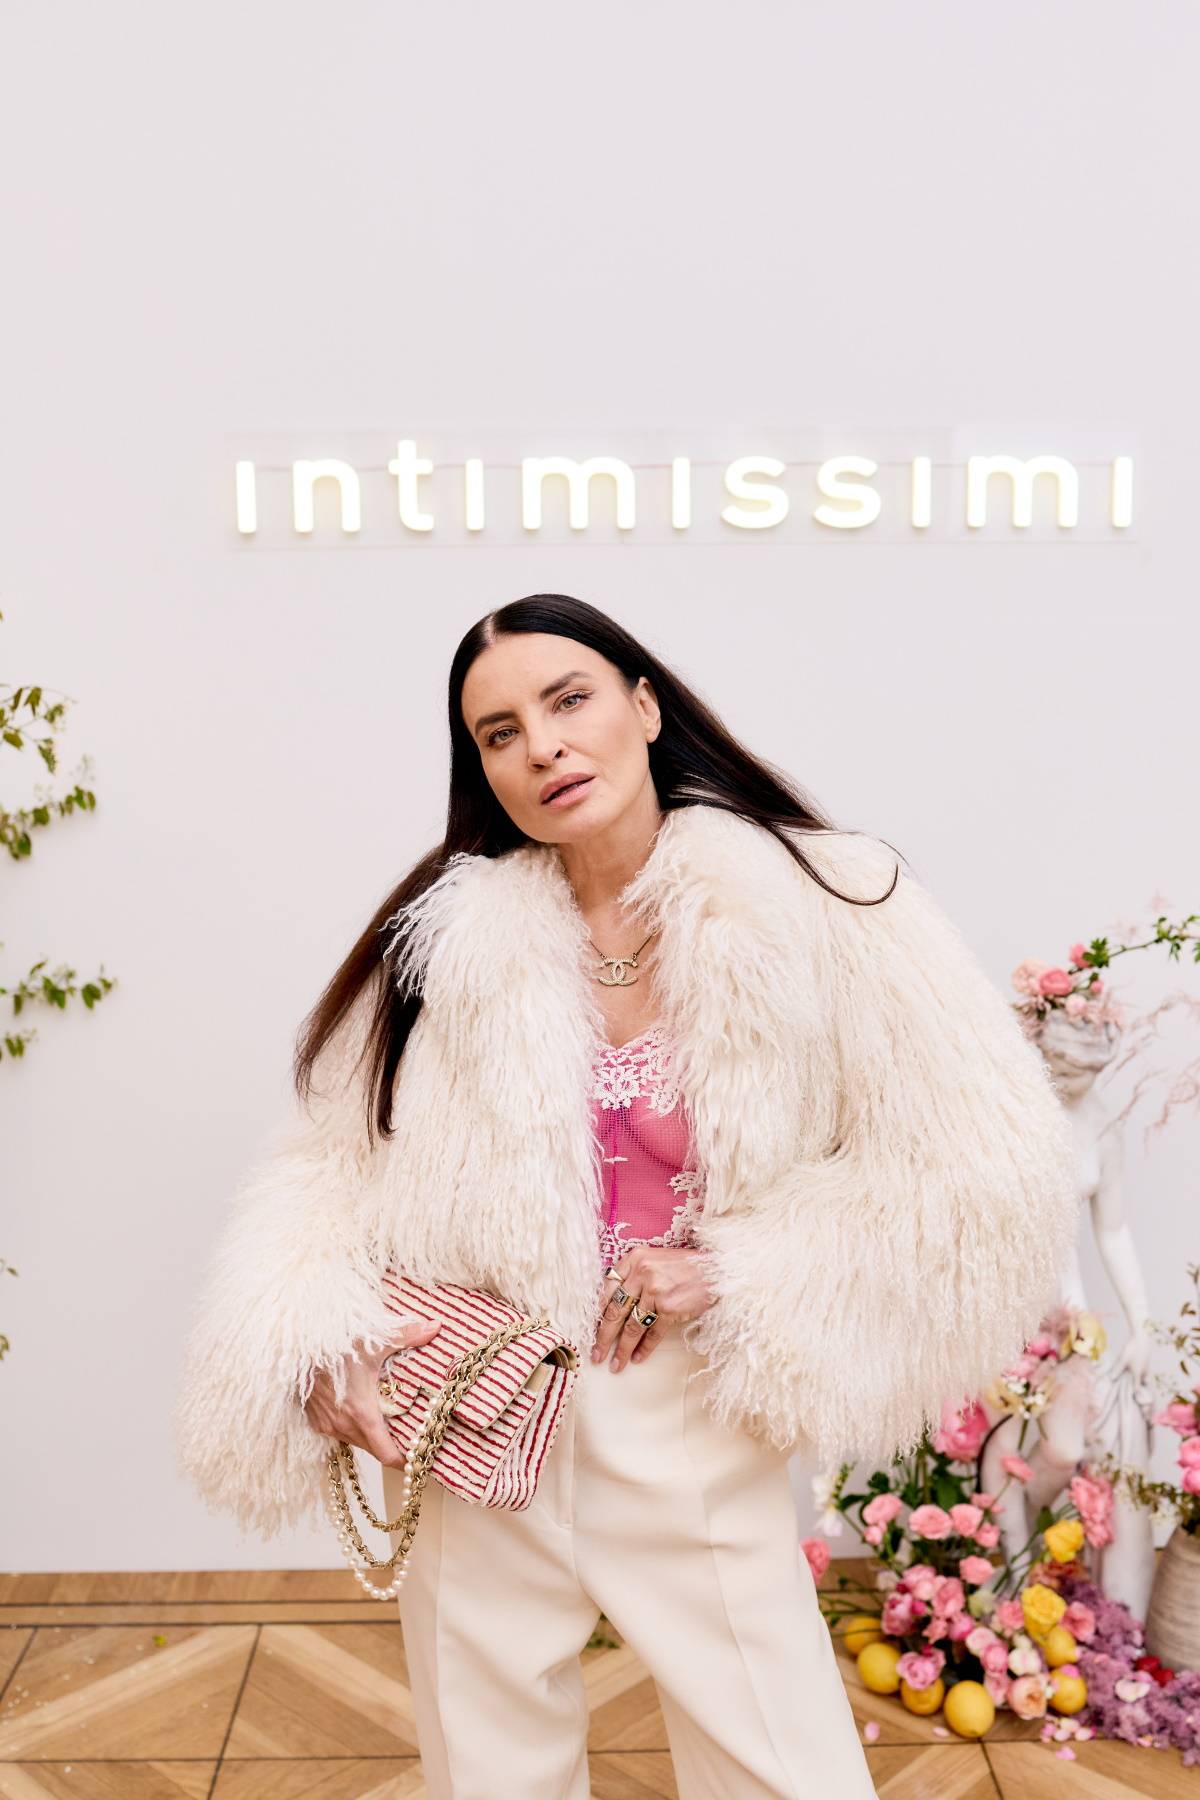 Intimissimi świętuje premierę kolekcji wiosna-lato 2023, której gwiazdą została Jennifer Lopez. Uroczysta premiera nowych projektów Intimissimi odbyła się w warszawskim hotelu Bellotto, który z tej okazji zamieniono w willę nad Morzem Śródziemnym.